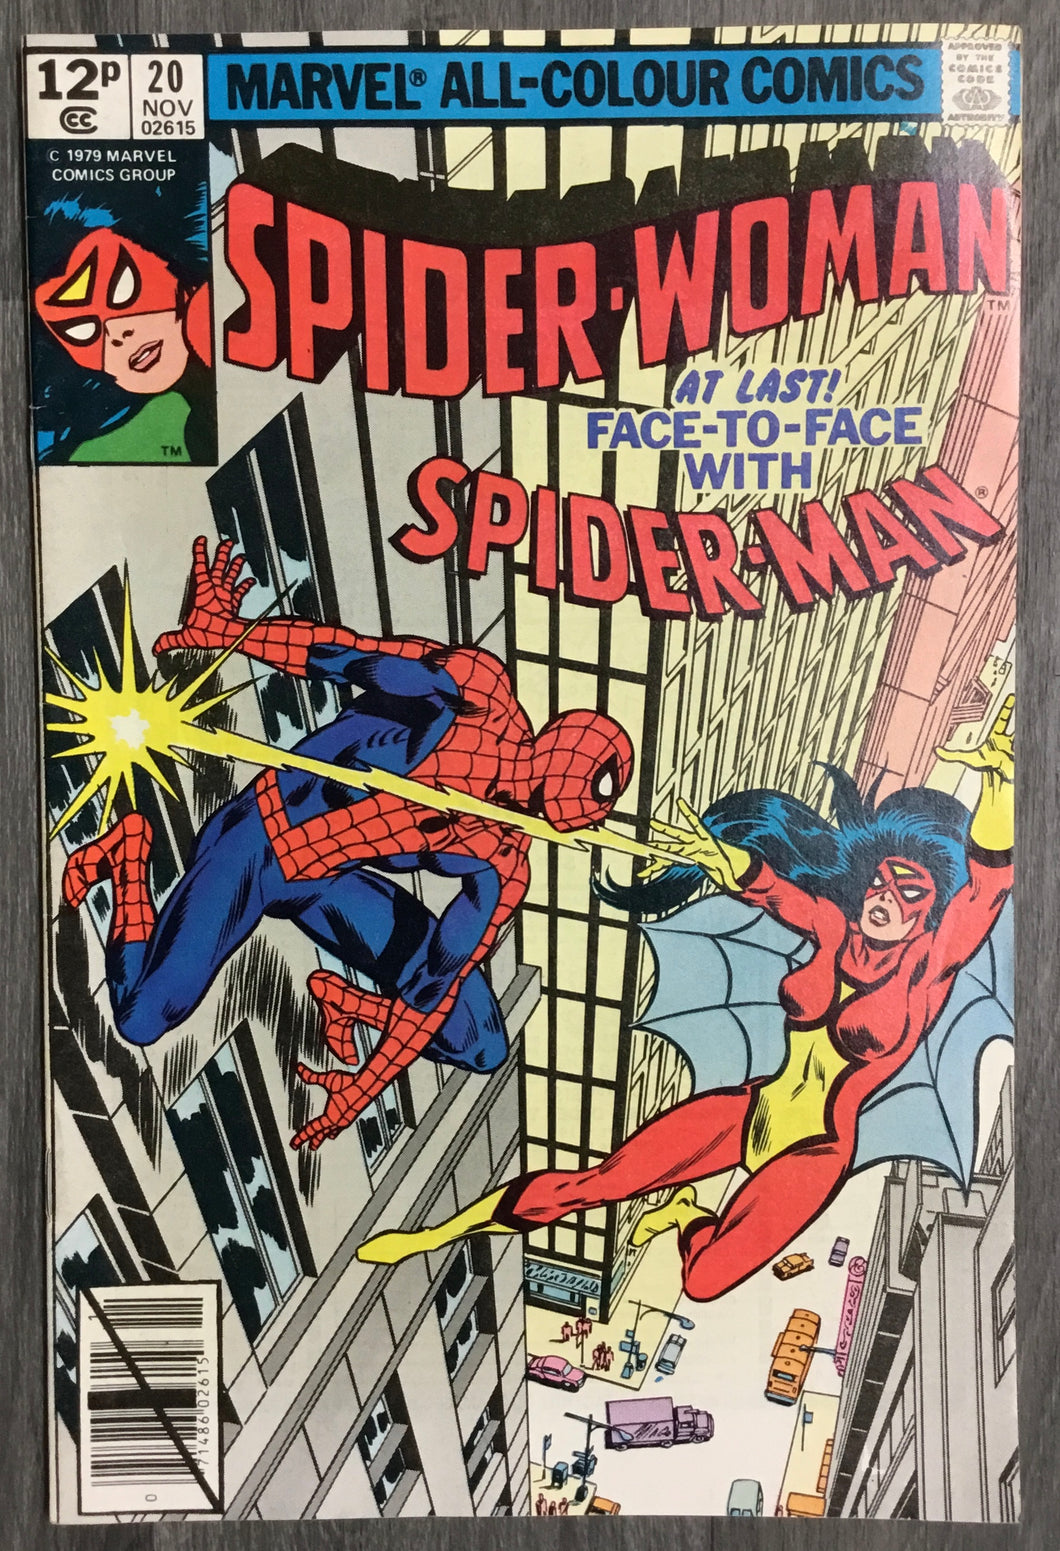 Spider-Woman No. #20 1979 Marvel Comics